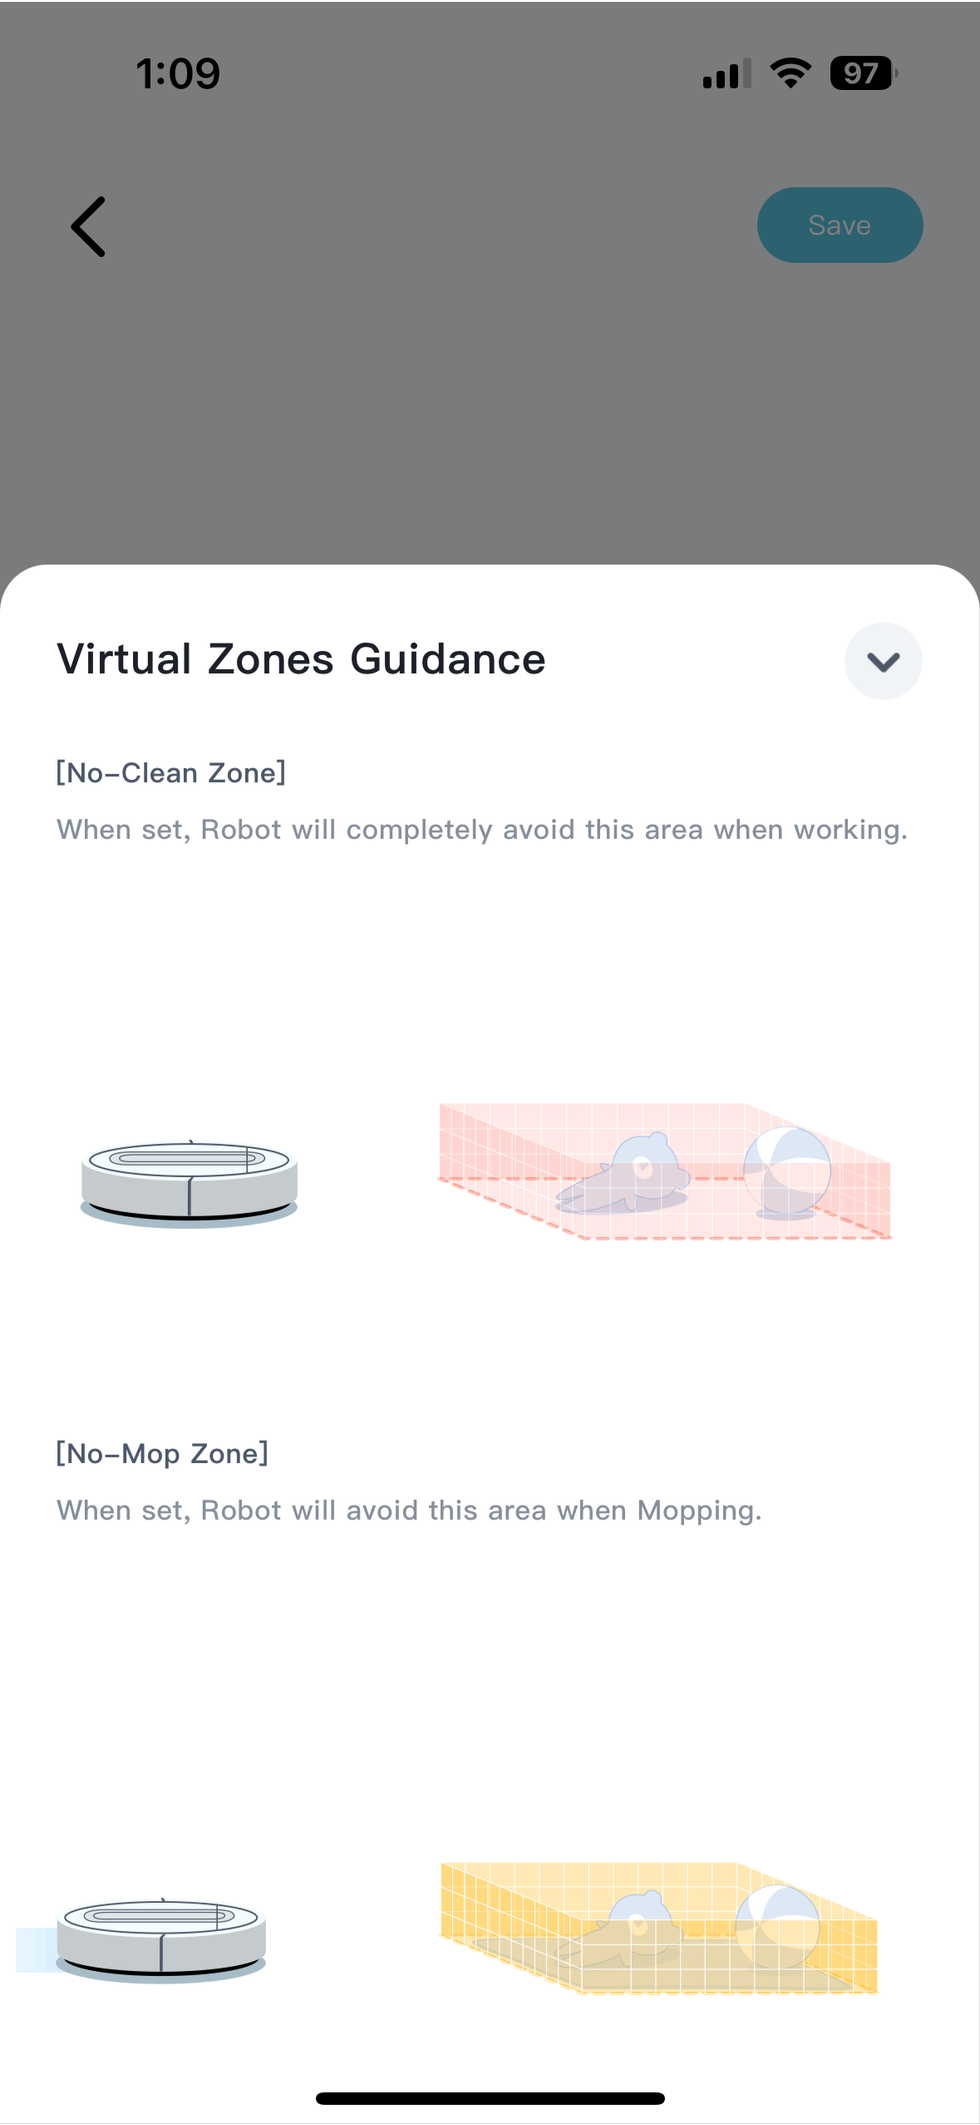 yeedi app showing no-mop zones and virtual zones